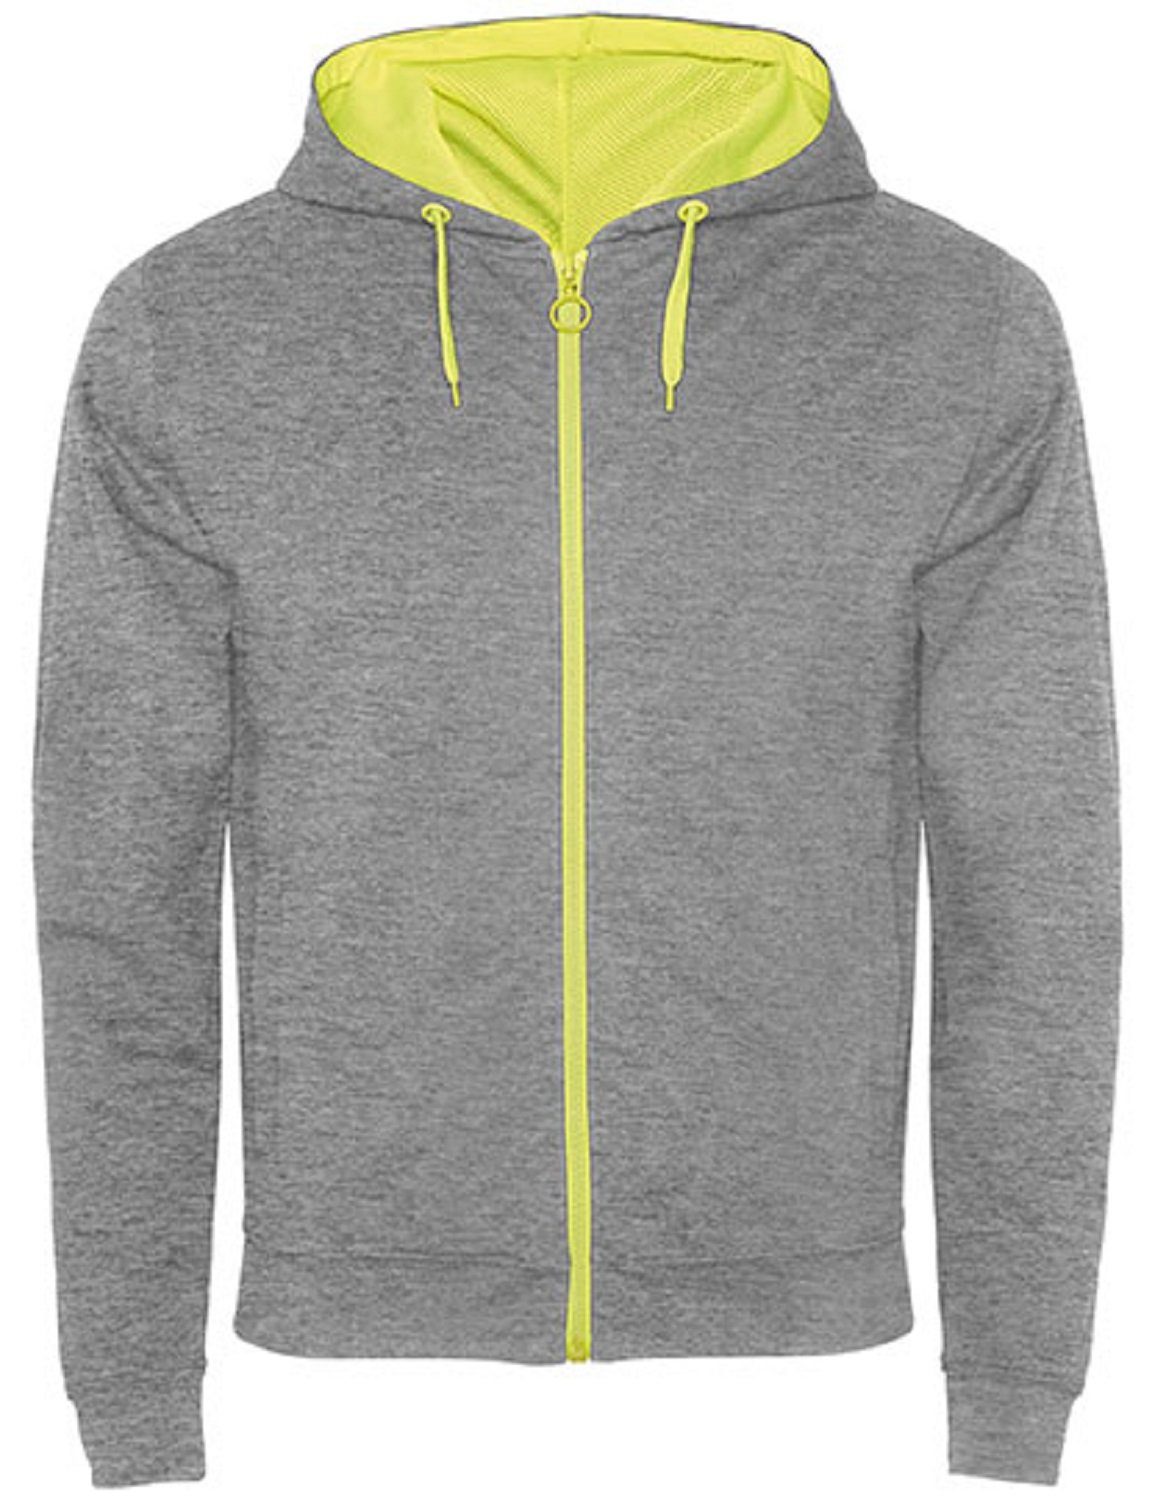 Roly Kapuzensweatjacke Herren Sweat-Jacke mit Kapuze / Kapuzensweater mit Reißverschluss auch für Frauen geeignet Grau/ Gelb